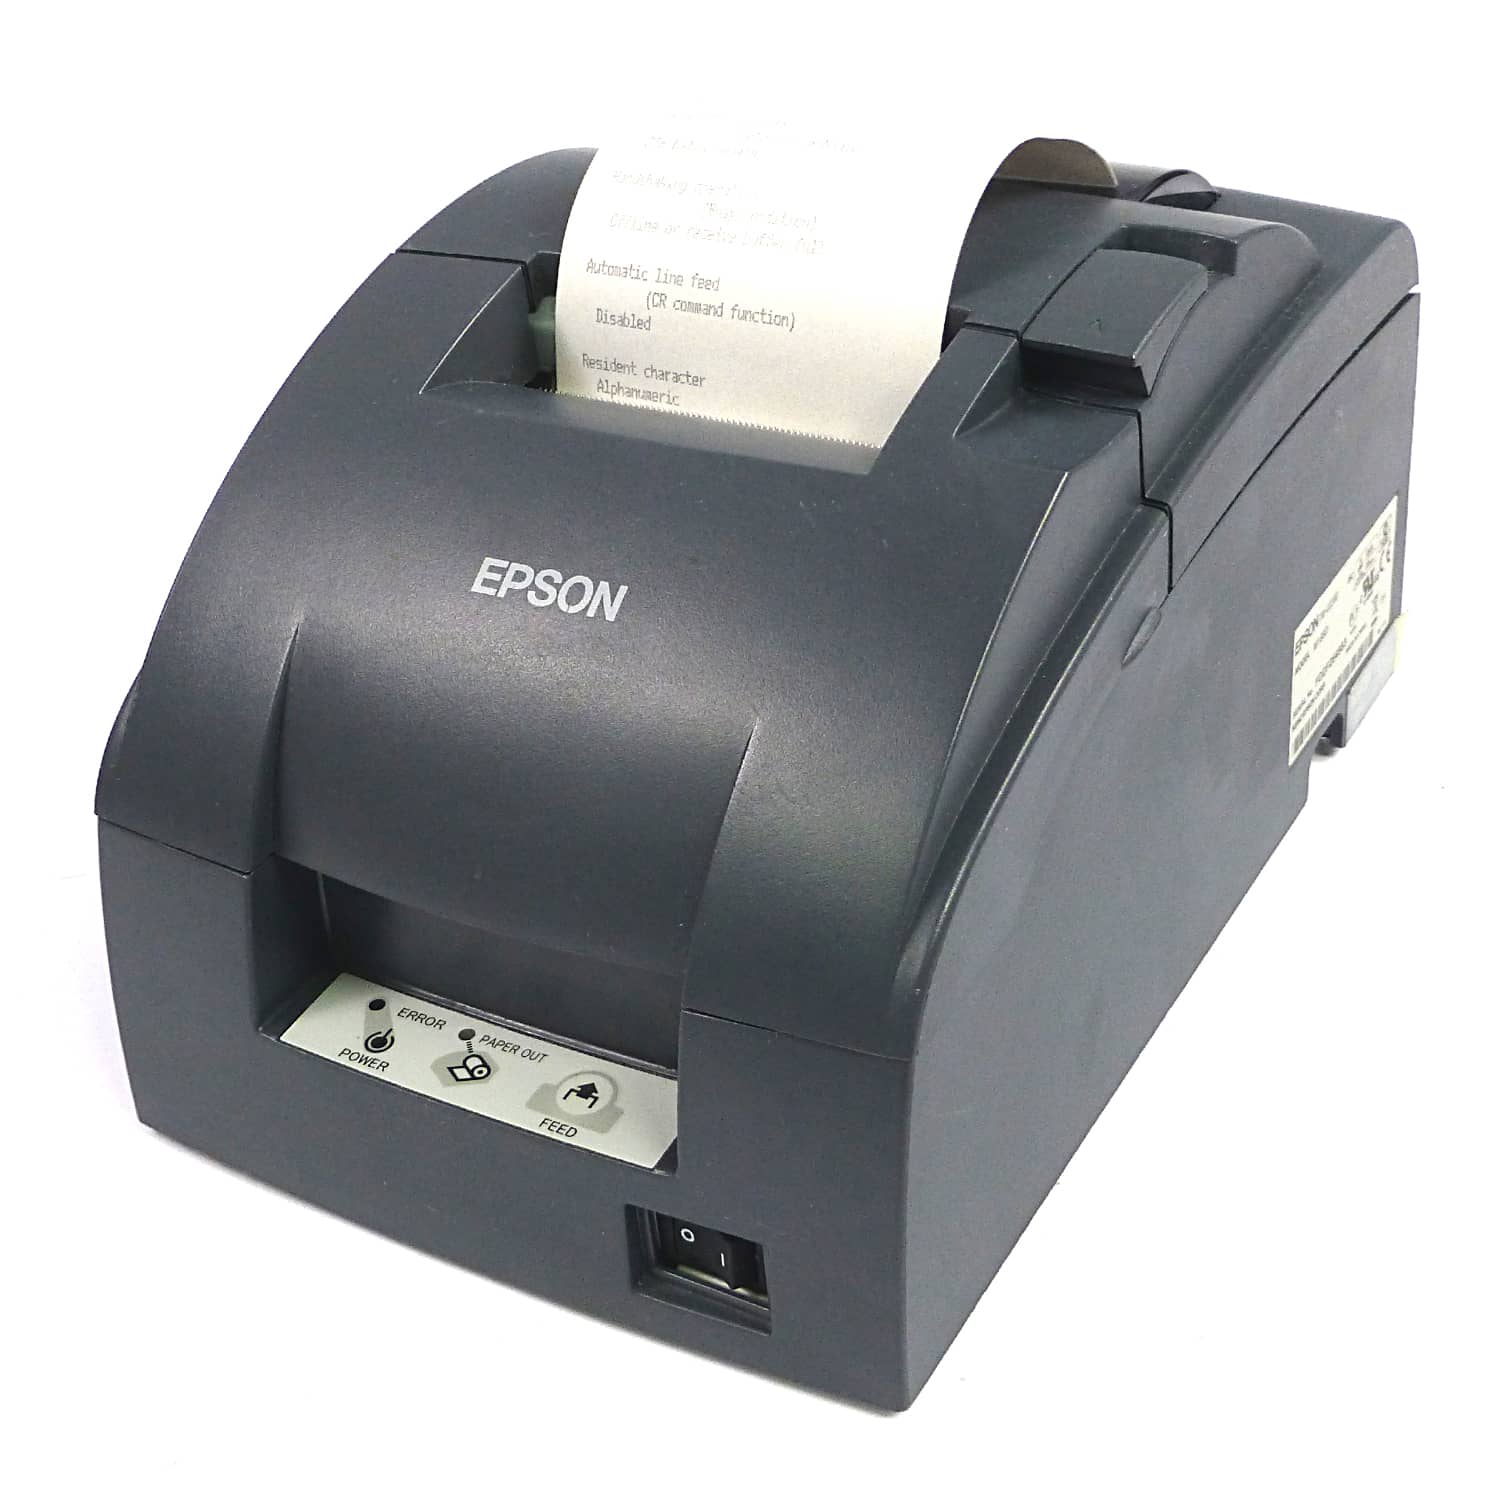 Impresora EPSON TMU-220D-M188D – Novatech | Asesoría & Tecnología